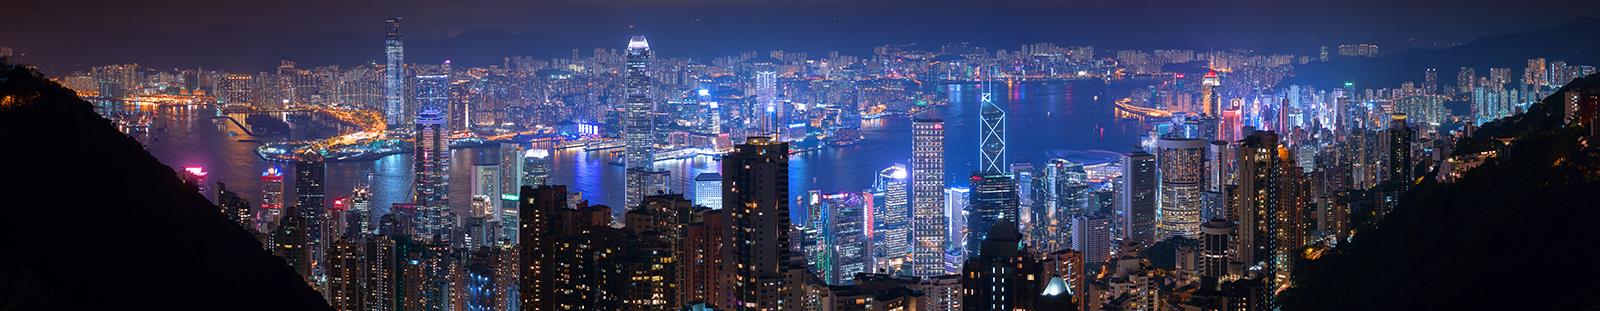 Ночной Гонконг. Панорама - интерьерная фотокартина